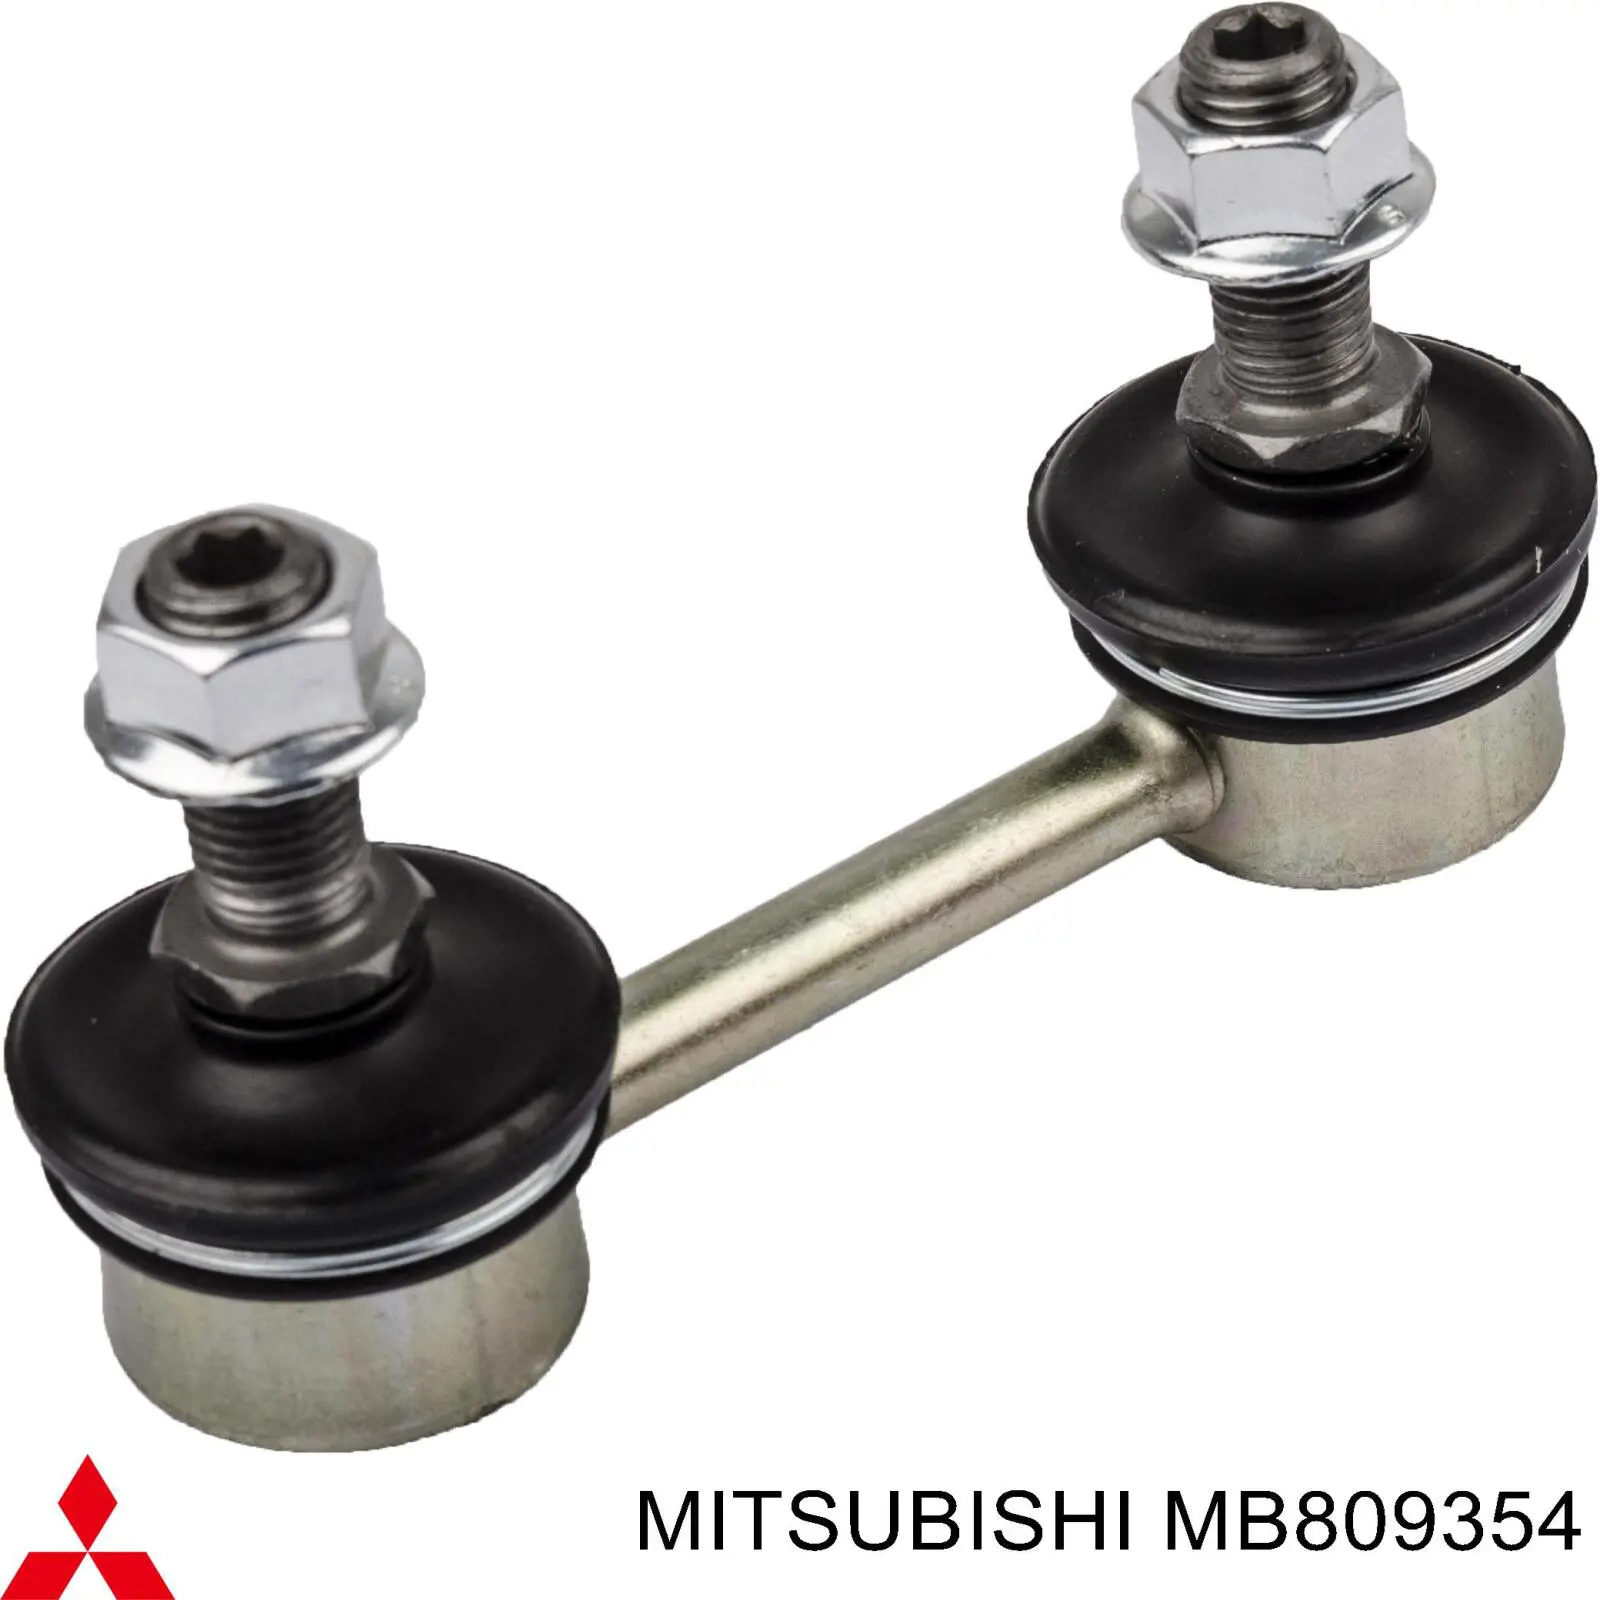 MB809354 Mitsubishi soporte de barra estabilizadora trasera